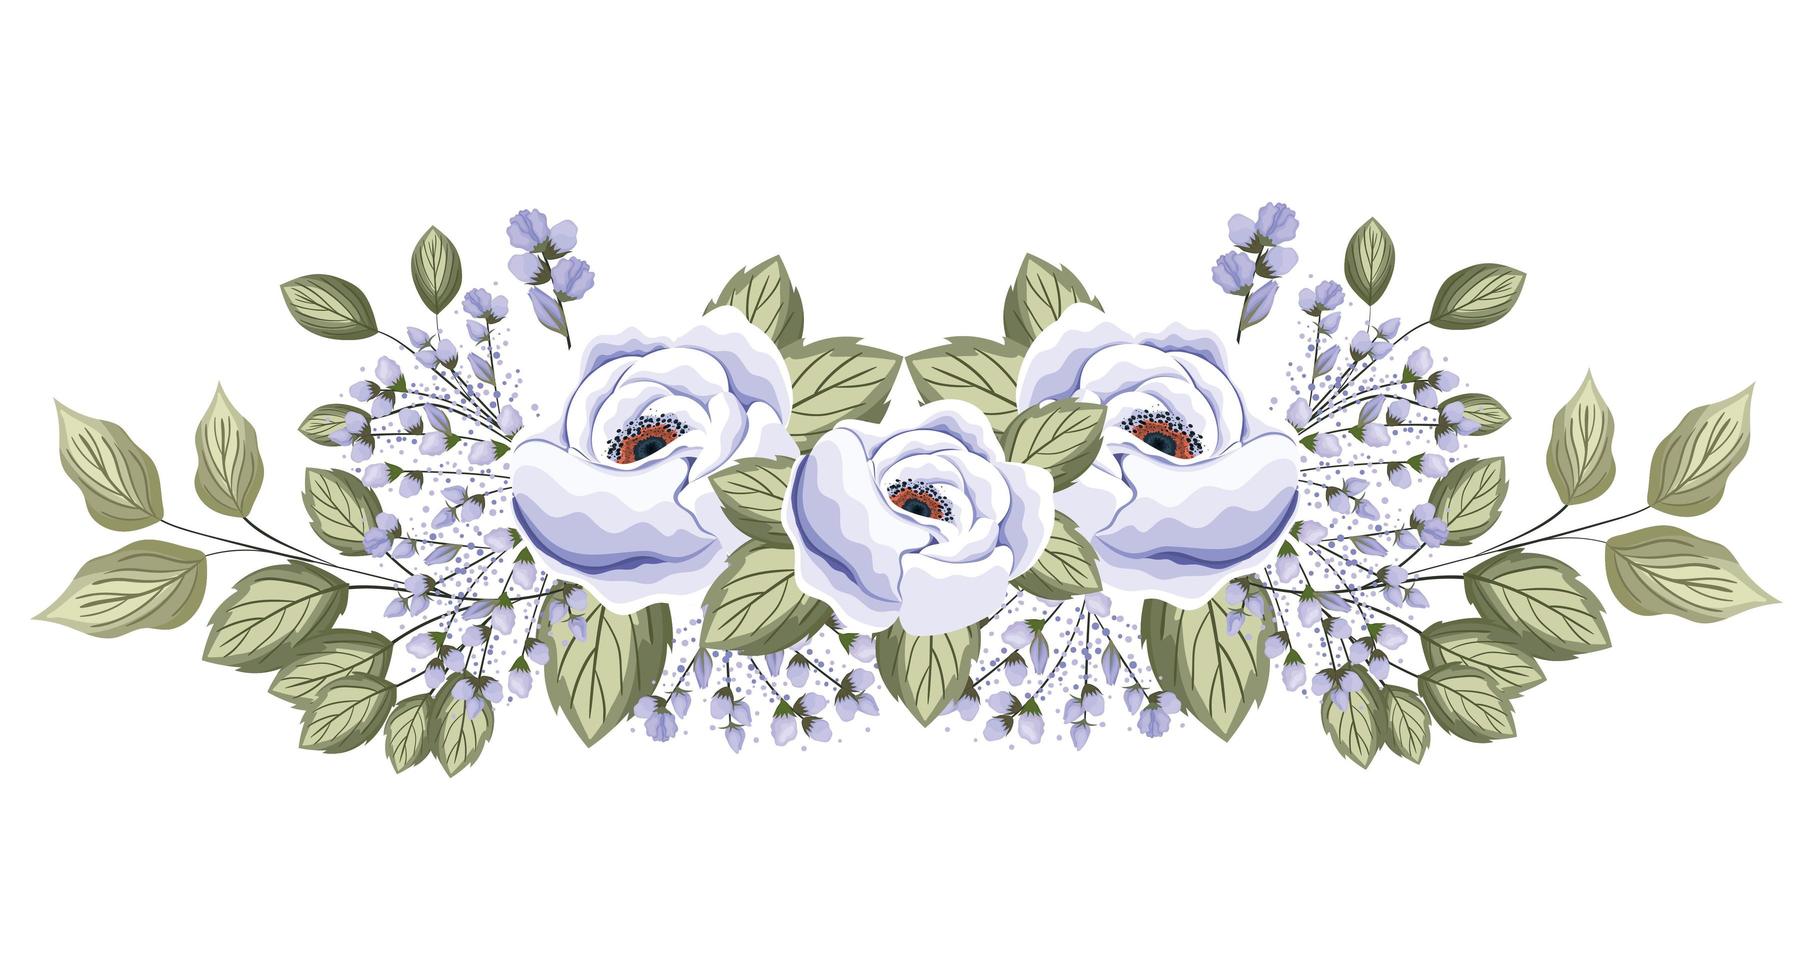 vita rosor blommar med knoppar och bladmålning vektor